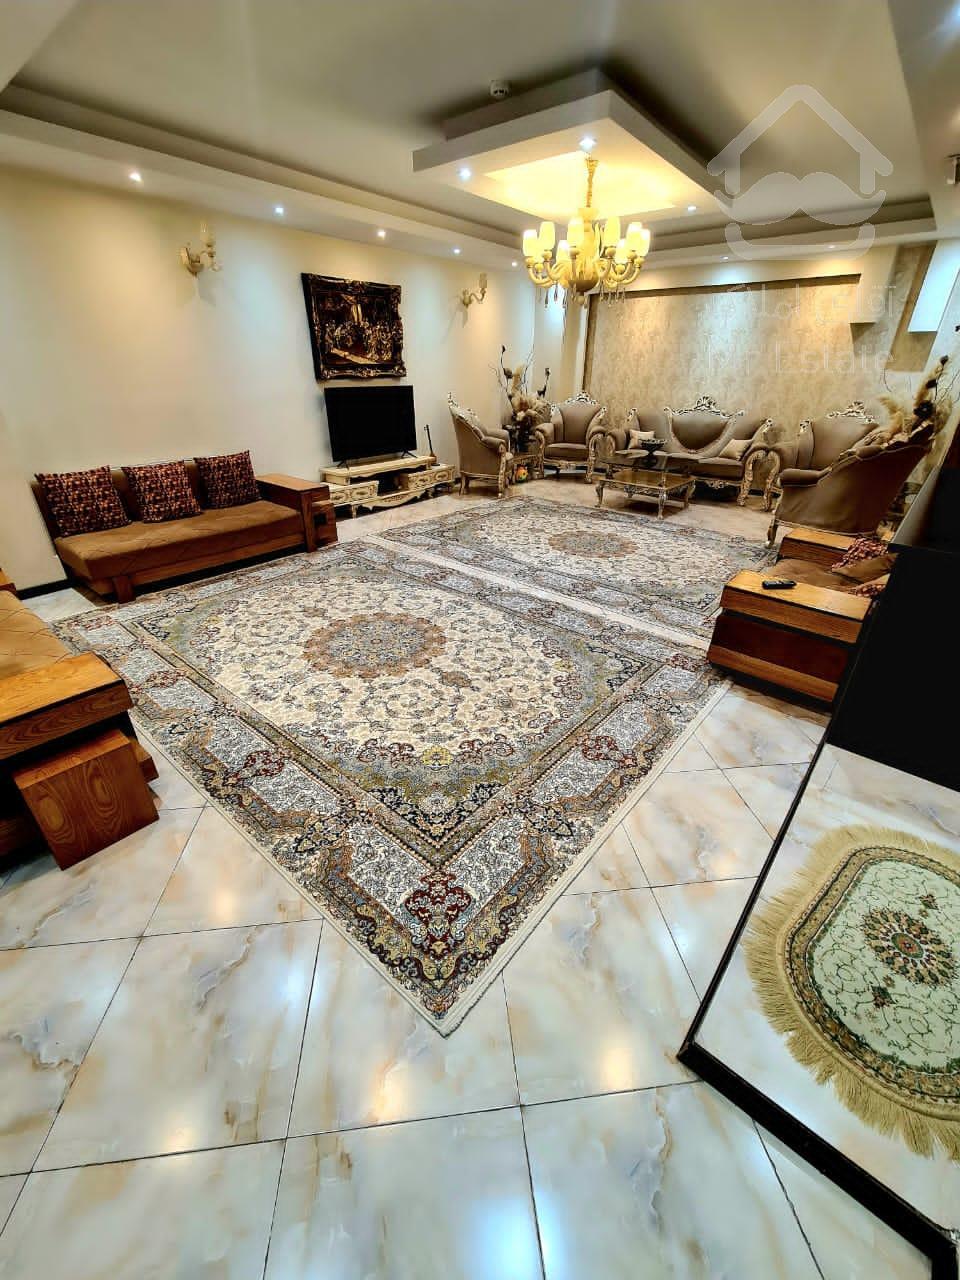 فروش یک واحد آپارتمان در آذربایجان